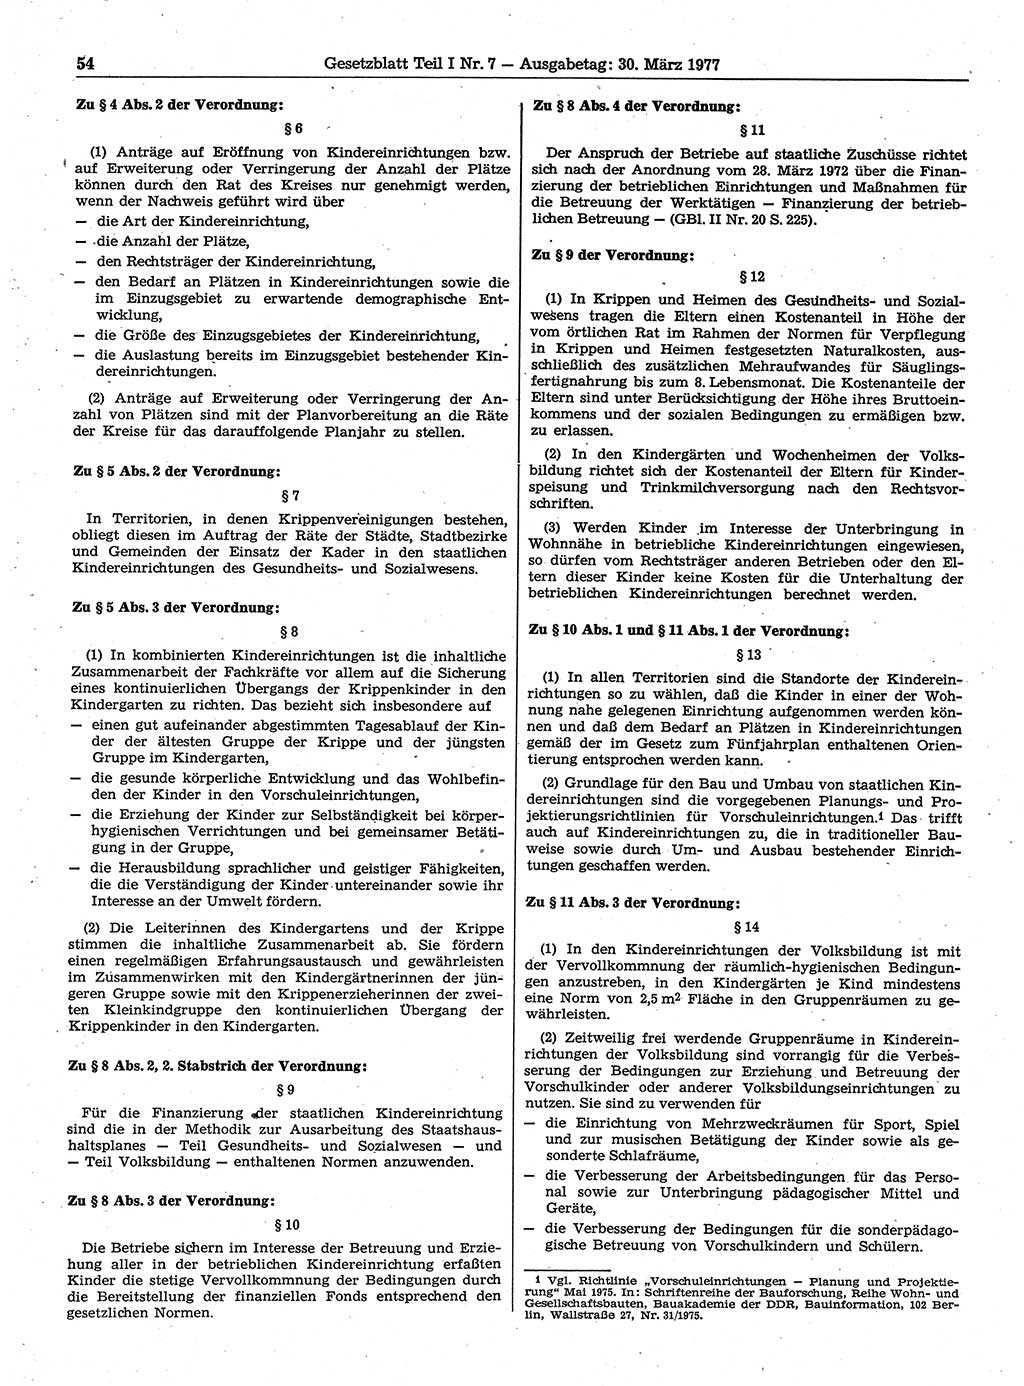 Gesetzblatt (GBl.) der Deutschen Demokratischen Republik (DDR) Teil Ⅰ 1977, Seite 54 (GBl. DDR Ⅰ 1977, S. 54)